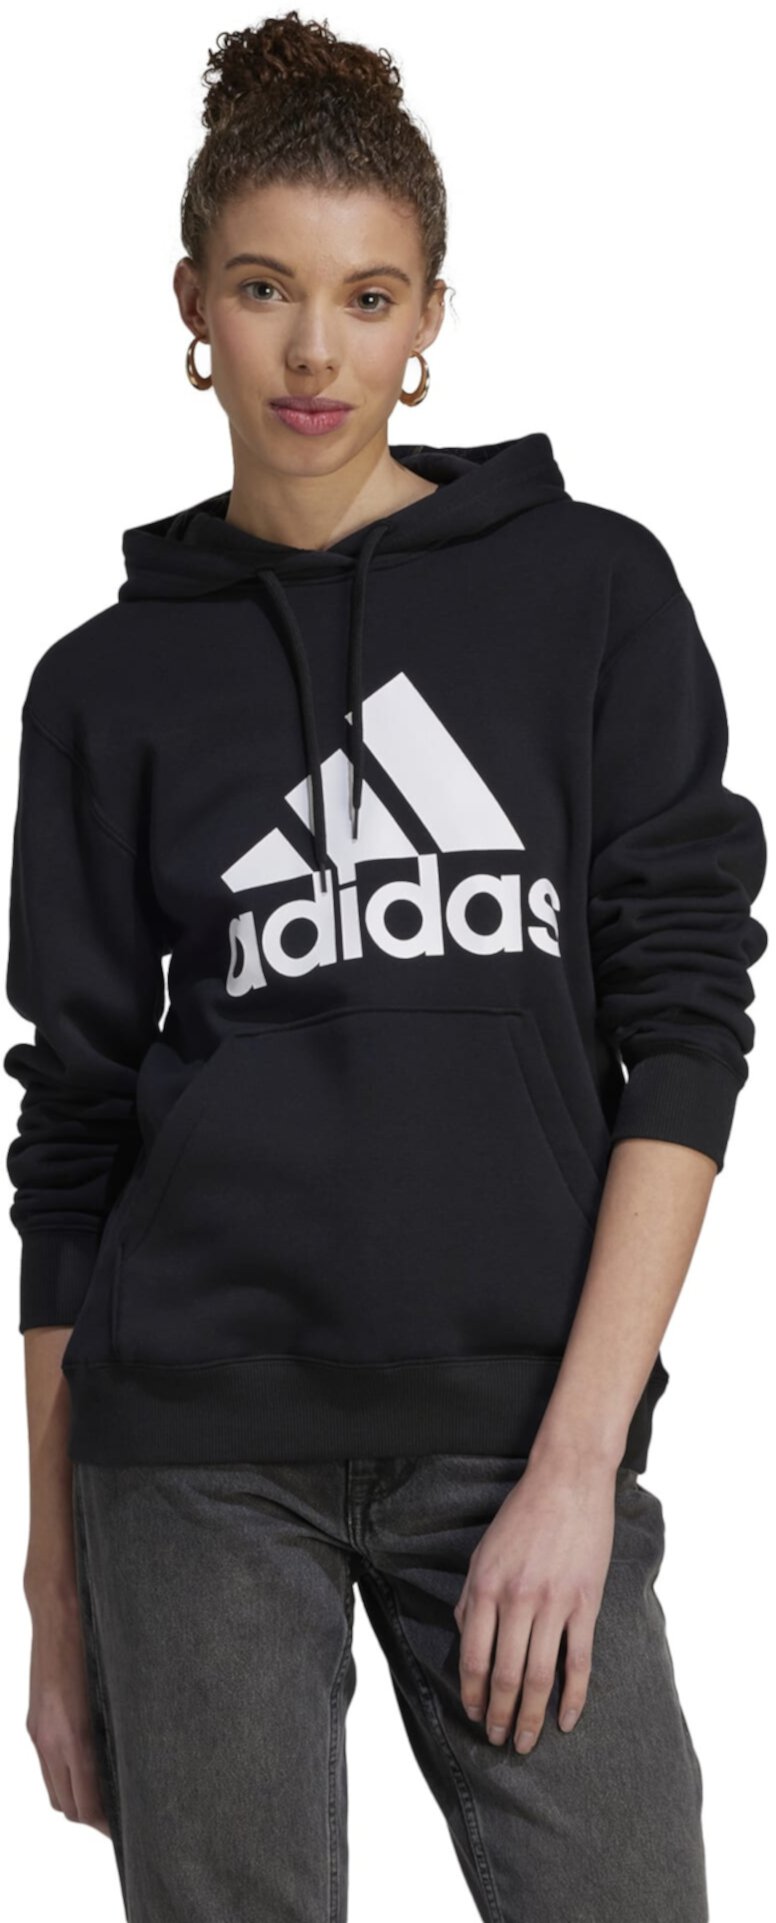 Женский худи Adidas Essentials с большим логотипом Adidas